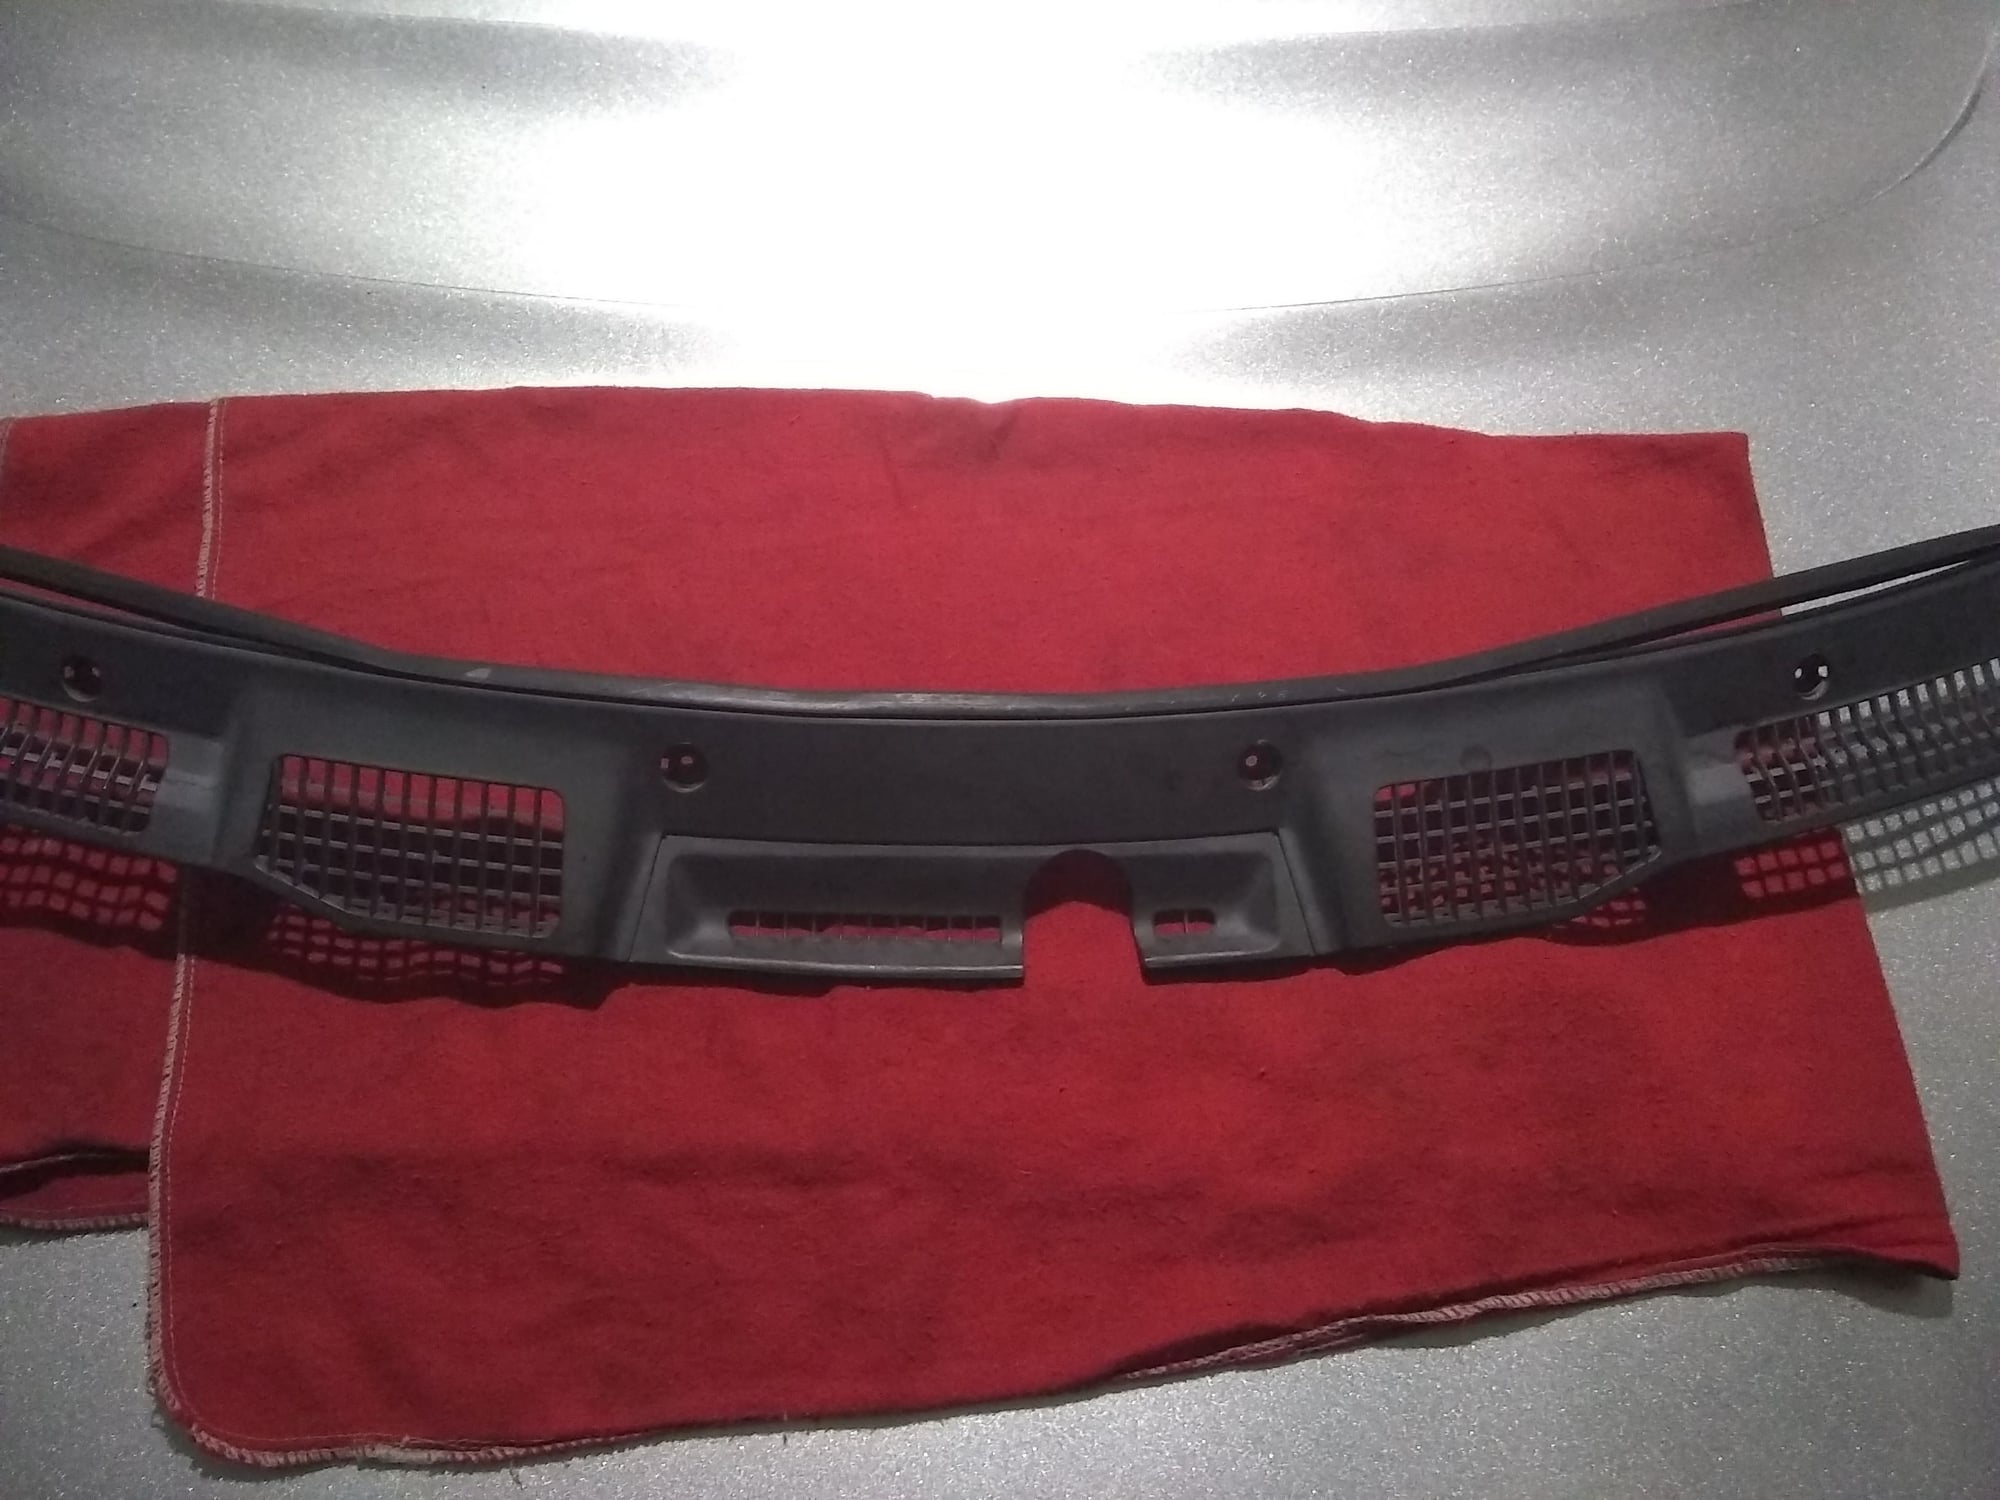 Exterior Body Parts - FS: FD windshield wiper cowl - Used - 1993 to 2001 Mazda RX-7 - Dallas, TX 75252, United States